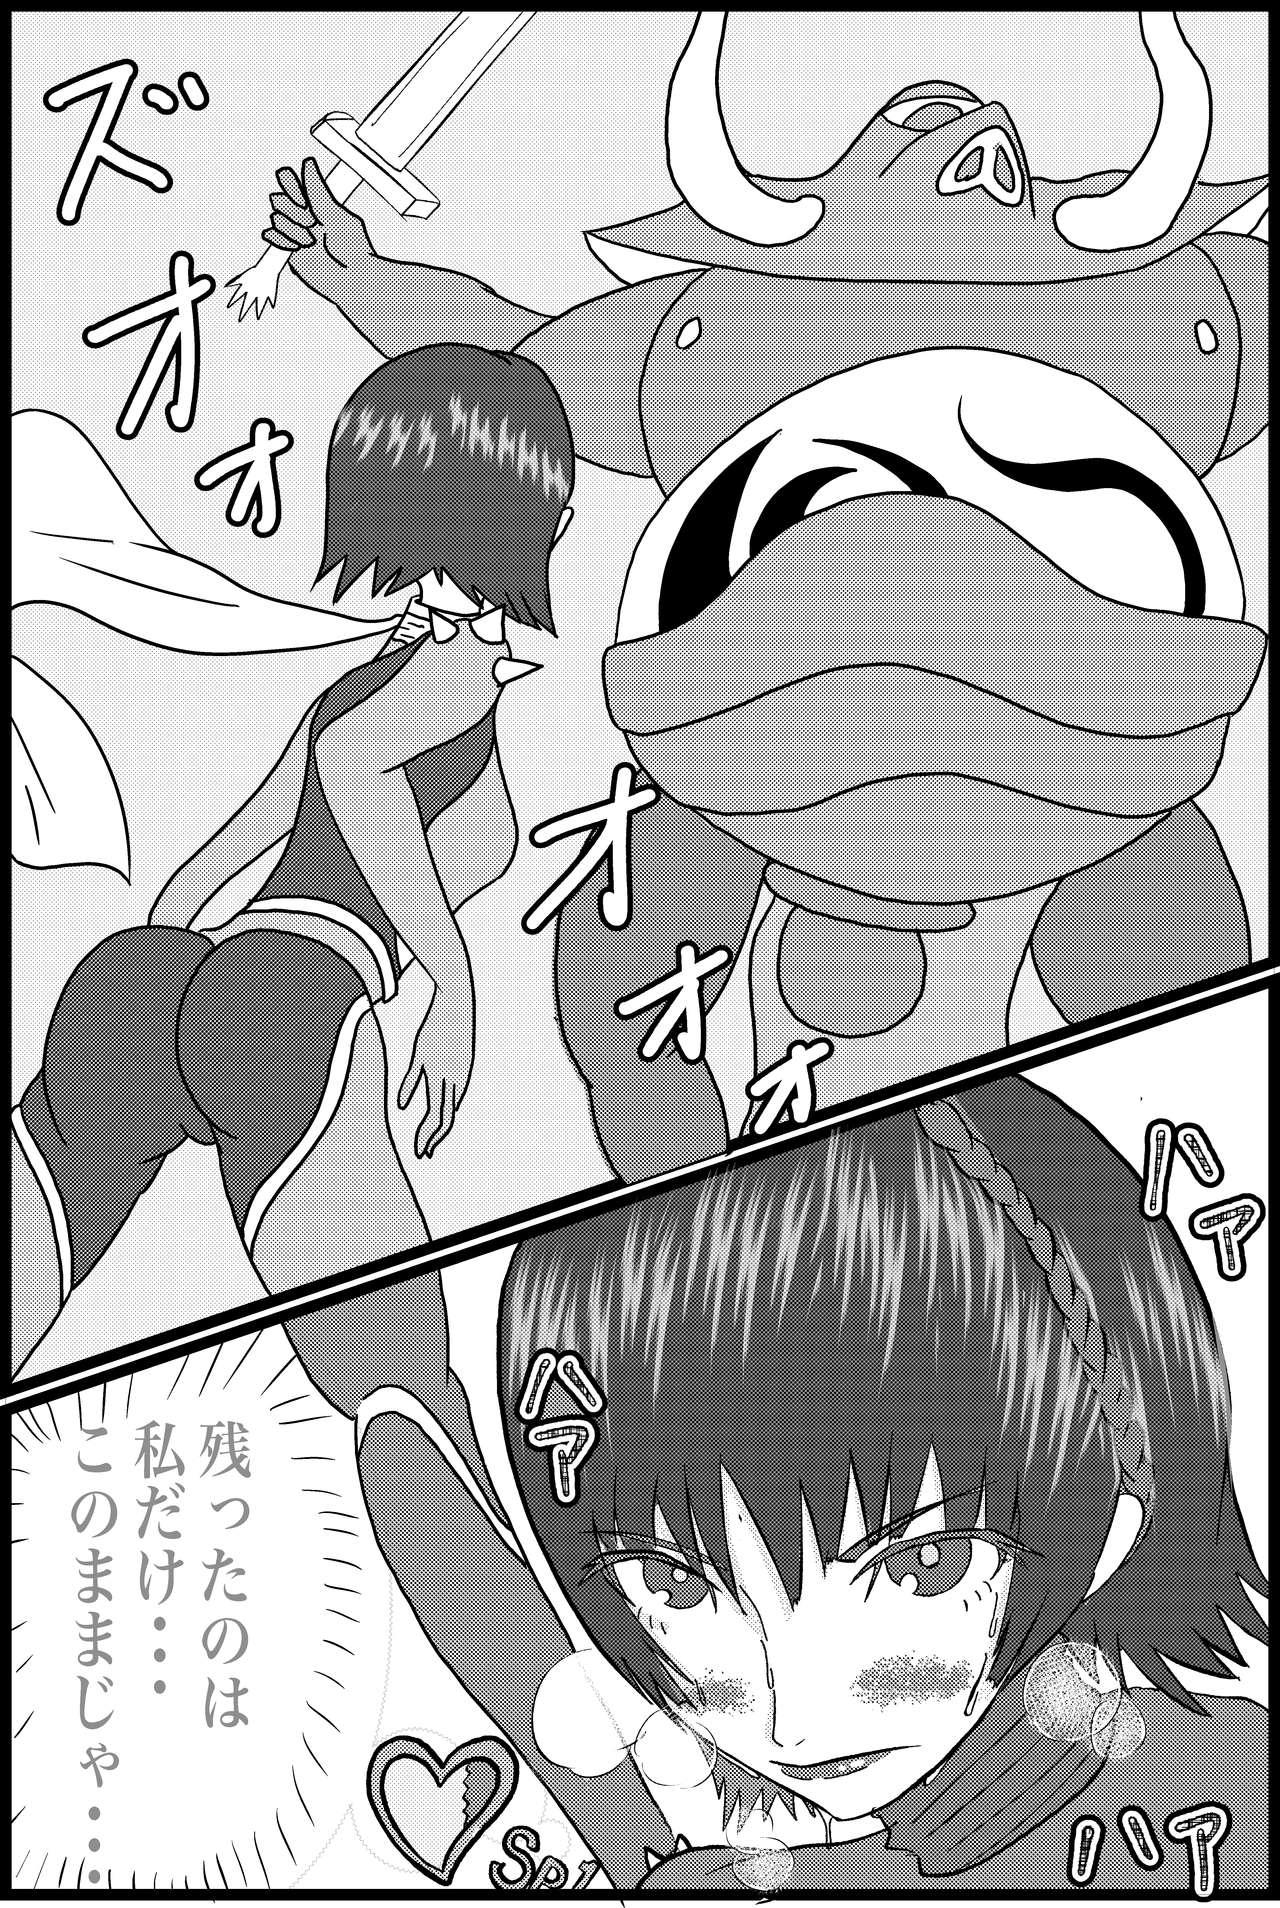 Fleshlight Kokoro no Kaitoudan VS Jakuten Debuff Kusuguri Jigoku - Persona 5 Dick Sucking Porn - Page 4